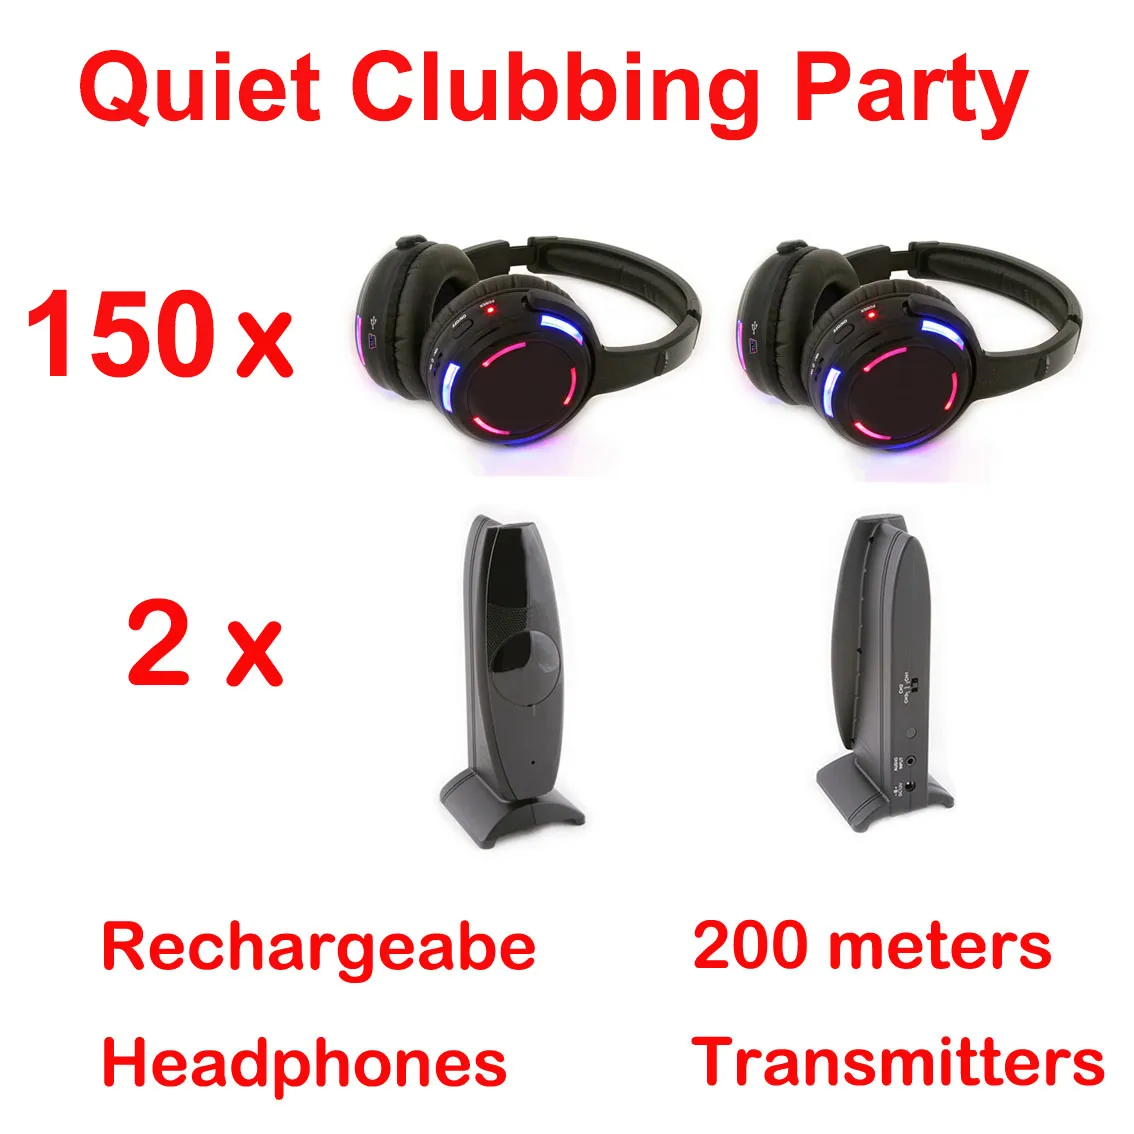 RF Silent Disco wireless Cuffie a led Cuffie UHF - Quiet Clubbing Party Bundle con 150 auricolari e 2 trasmettitori a 200 m di distanza